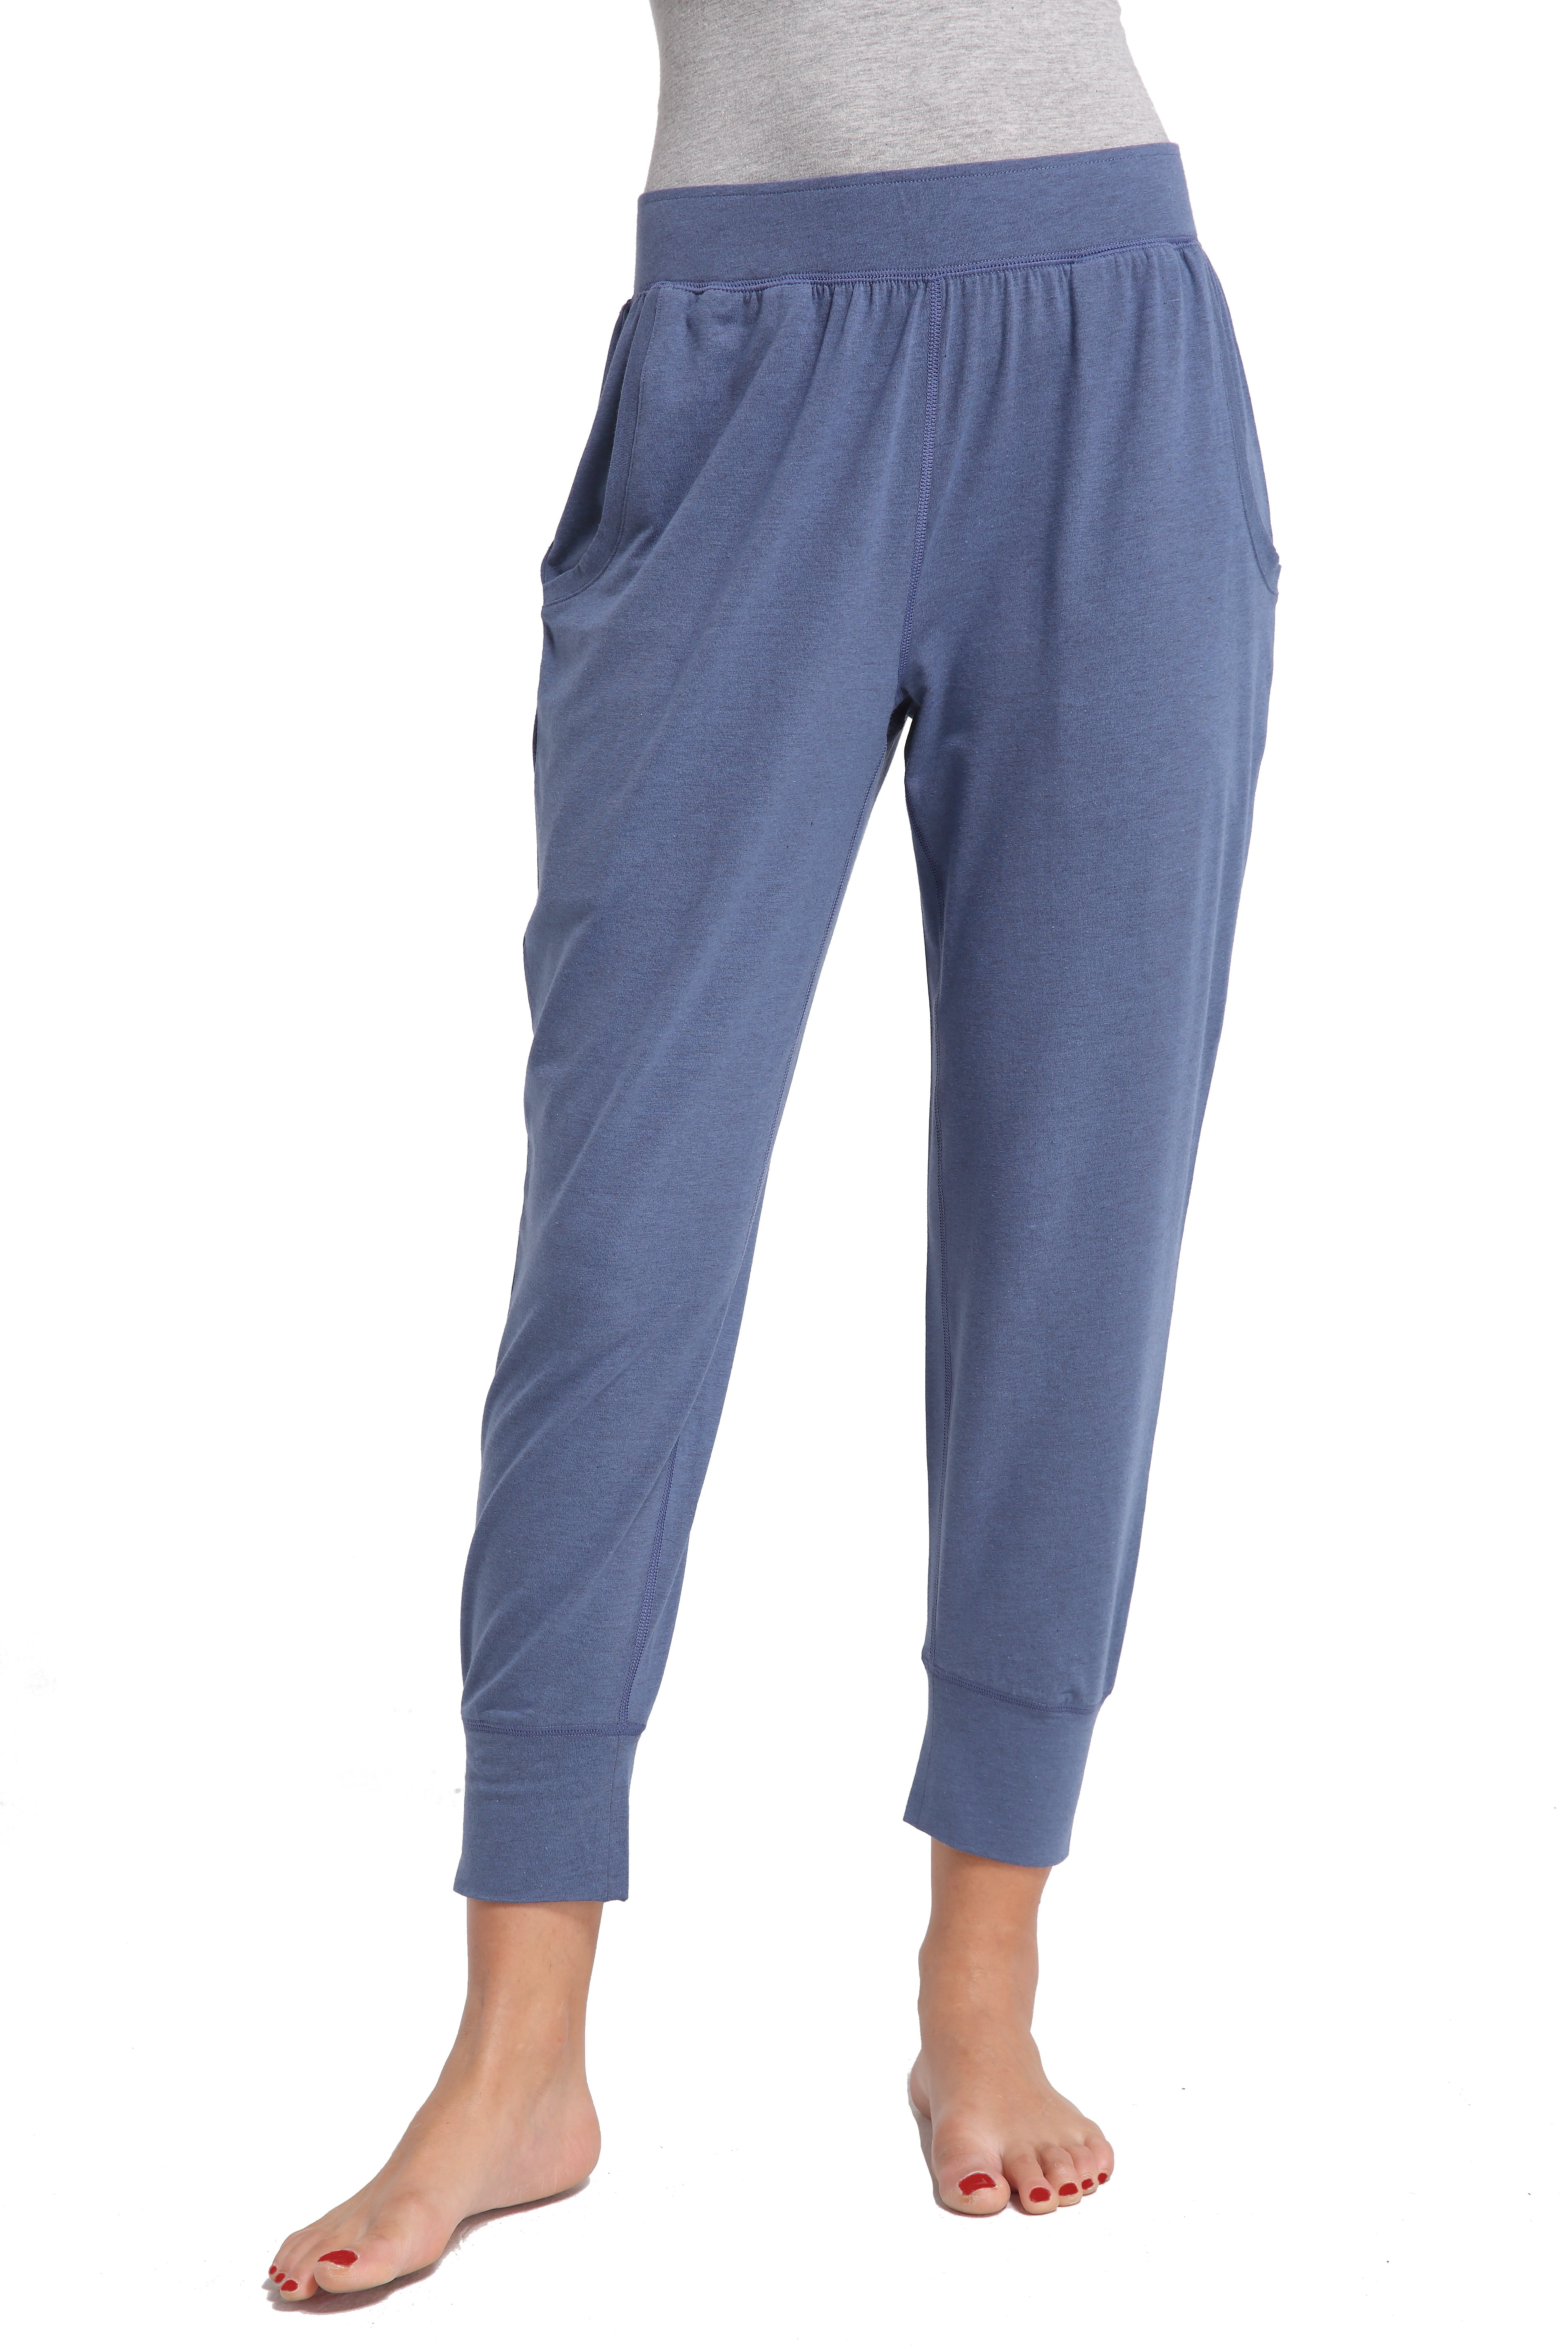 CYZ Women's Cotton Stretch Knit Pajamas Jogger Pants/Lounge Pants ...